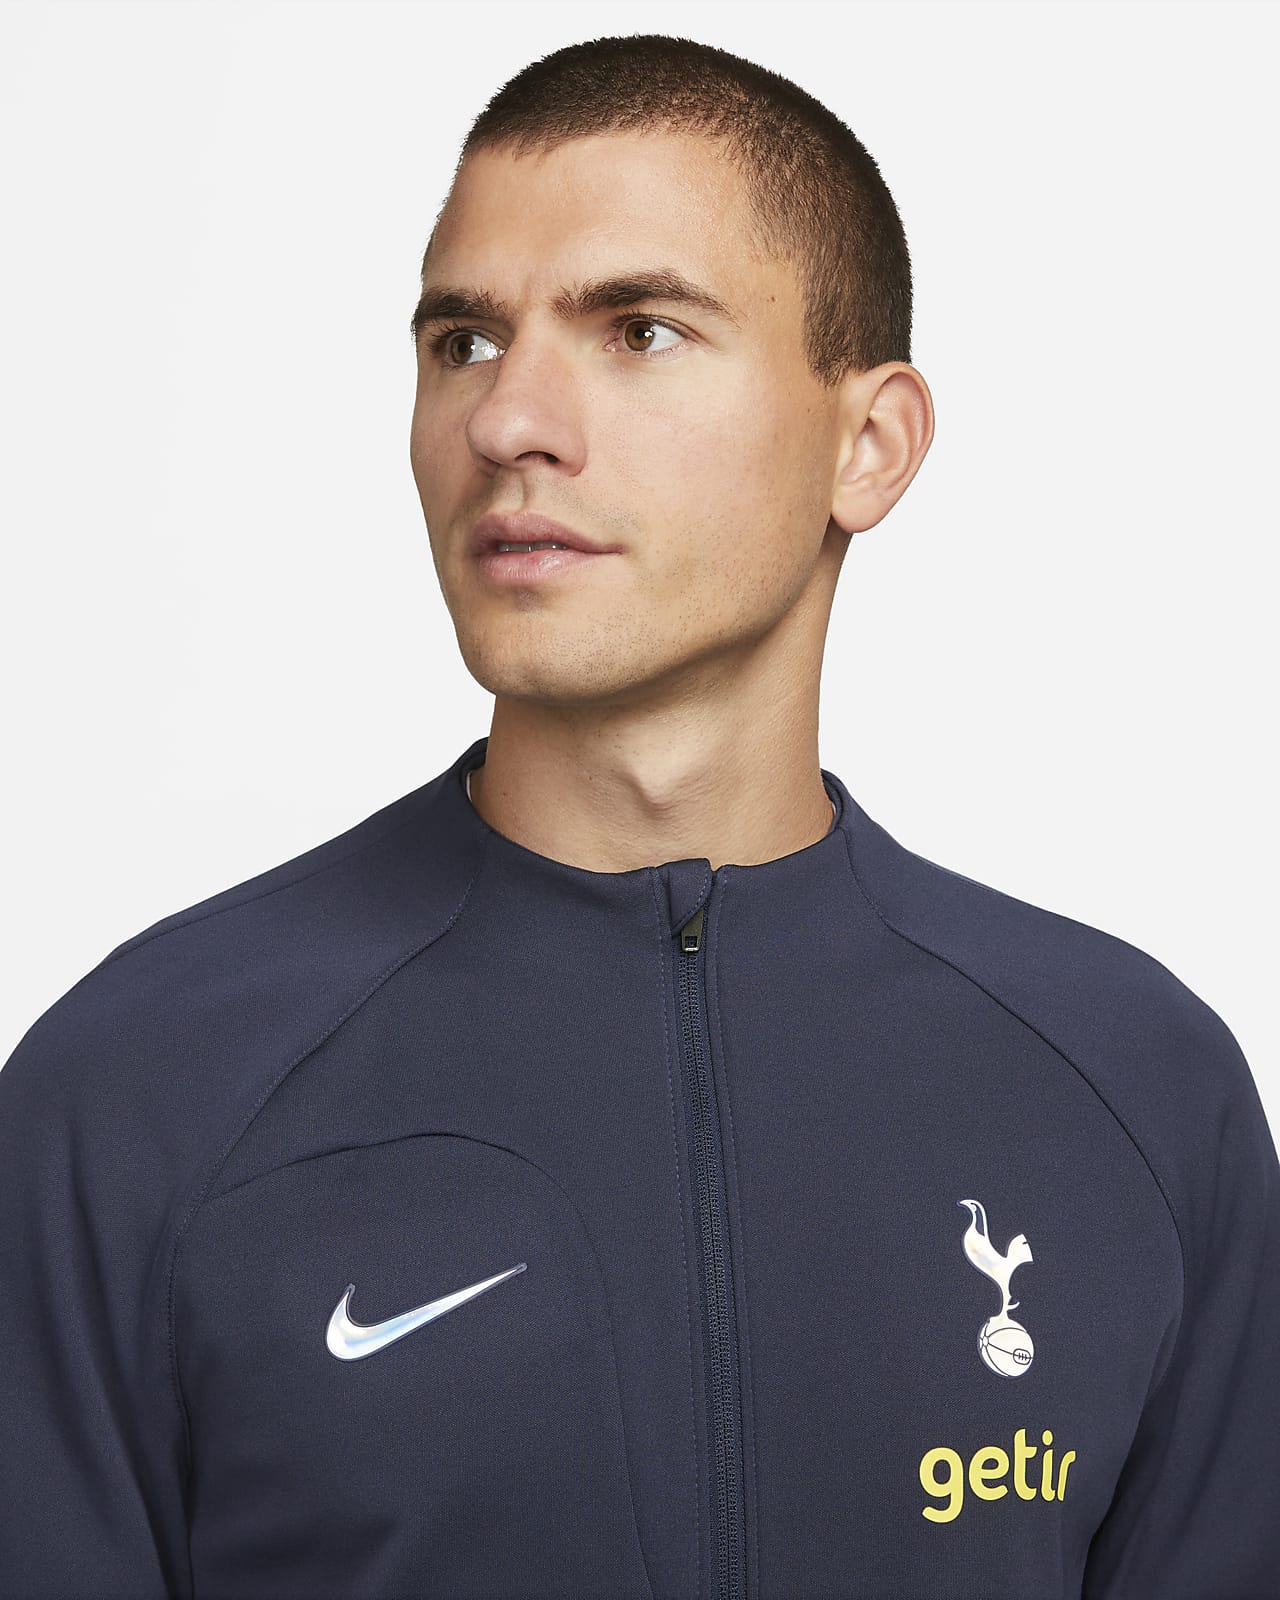 Veste à capuche doublée en Fleece Nike Tottenham Hotspur pour homme